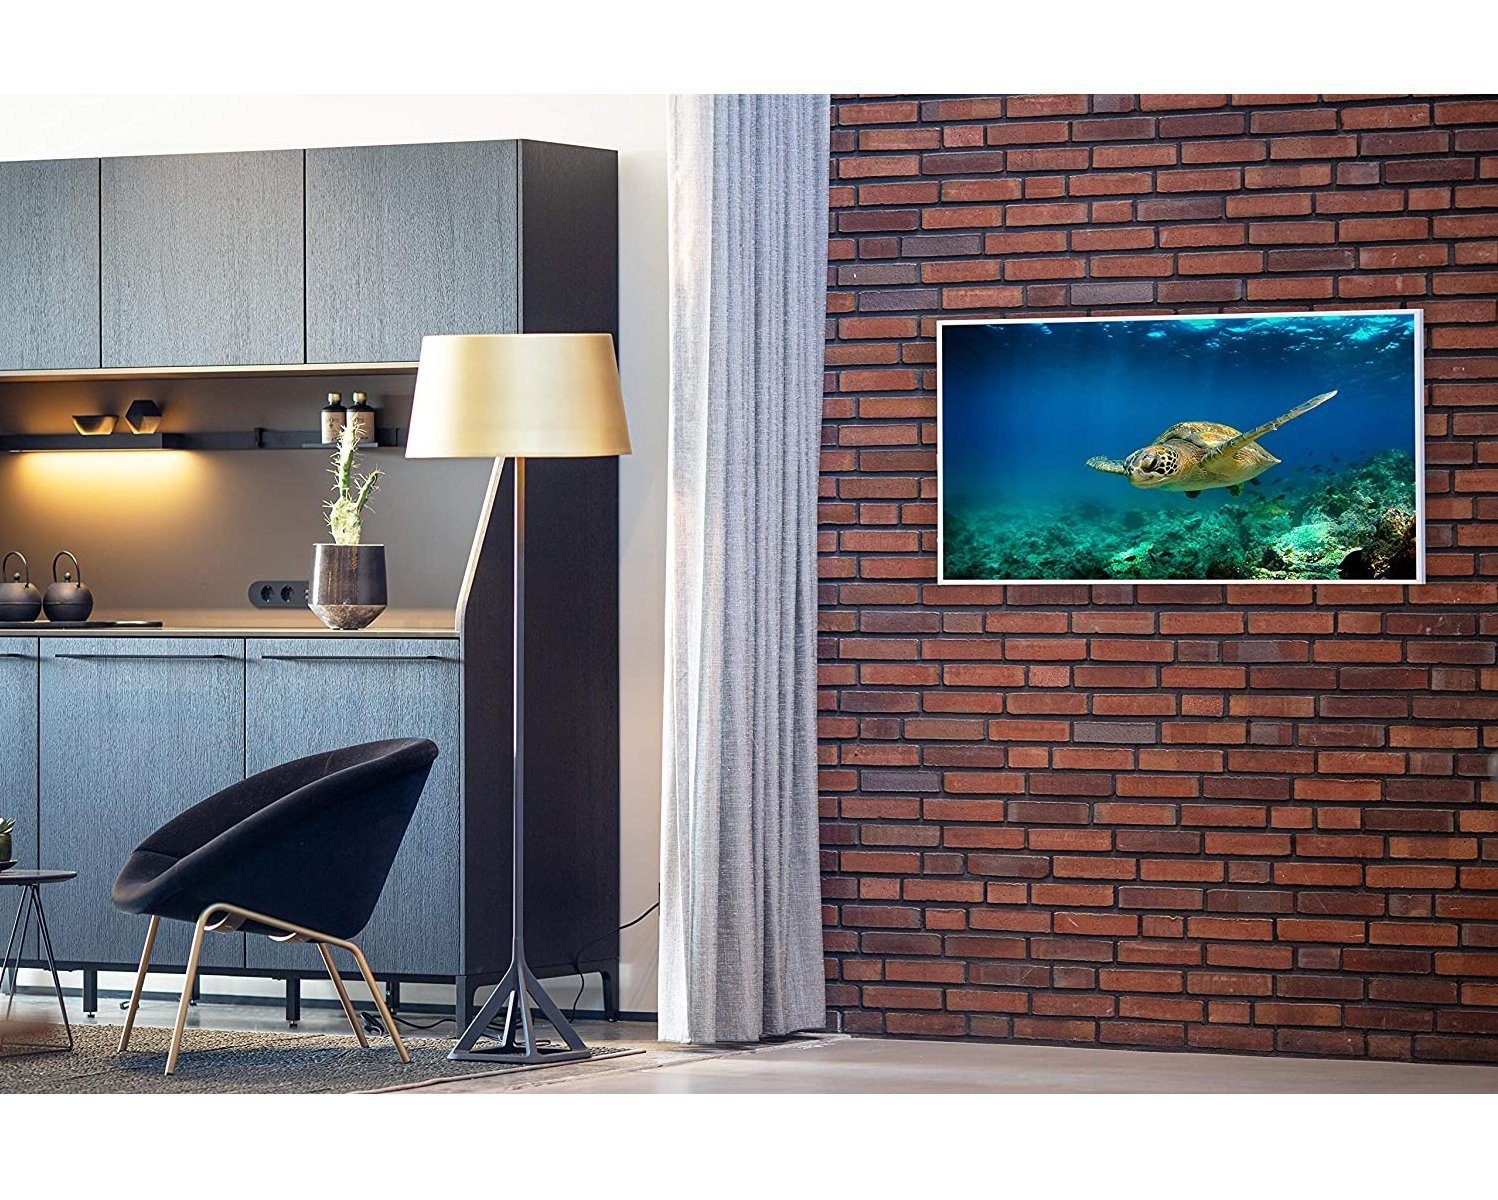 Könighaus Infrarotheizung Smart Home in Bild-Serie Made Strahlungswärme, 600W Unterwasser Schildkröte Germany, angenehme Smart